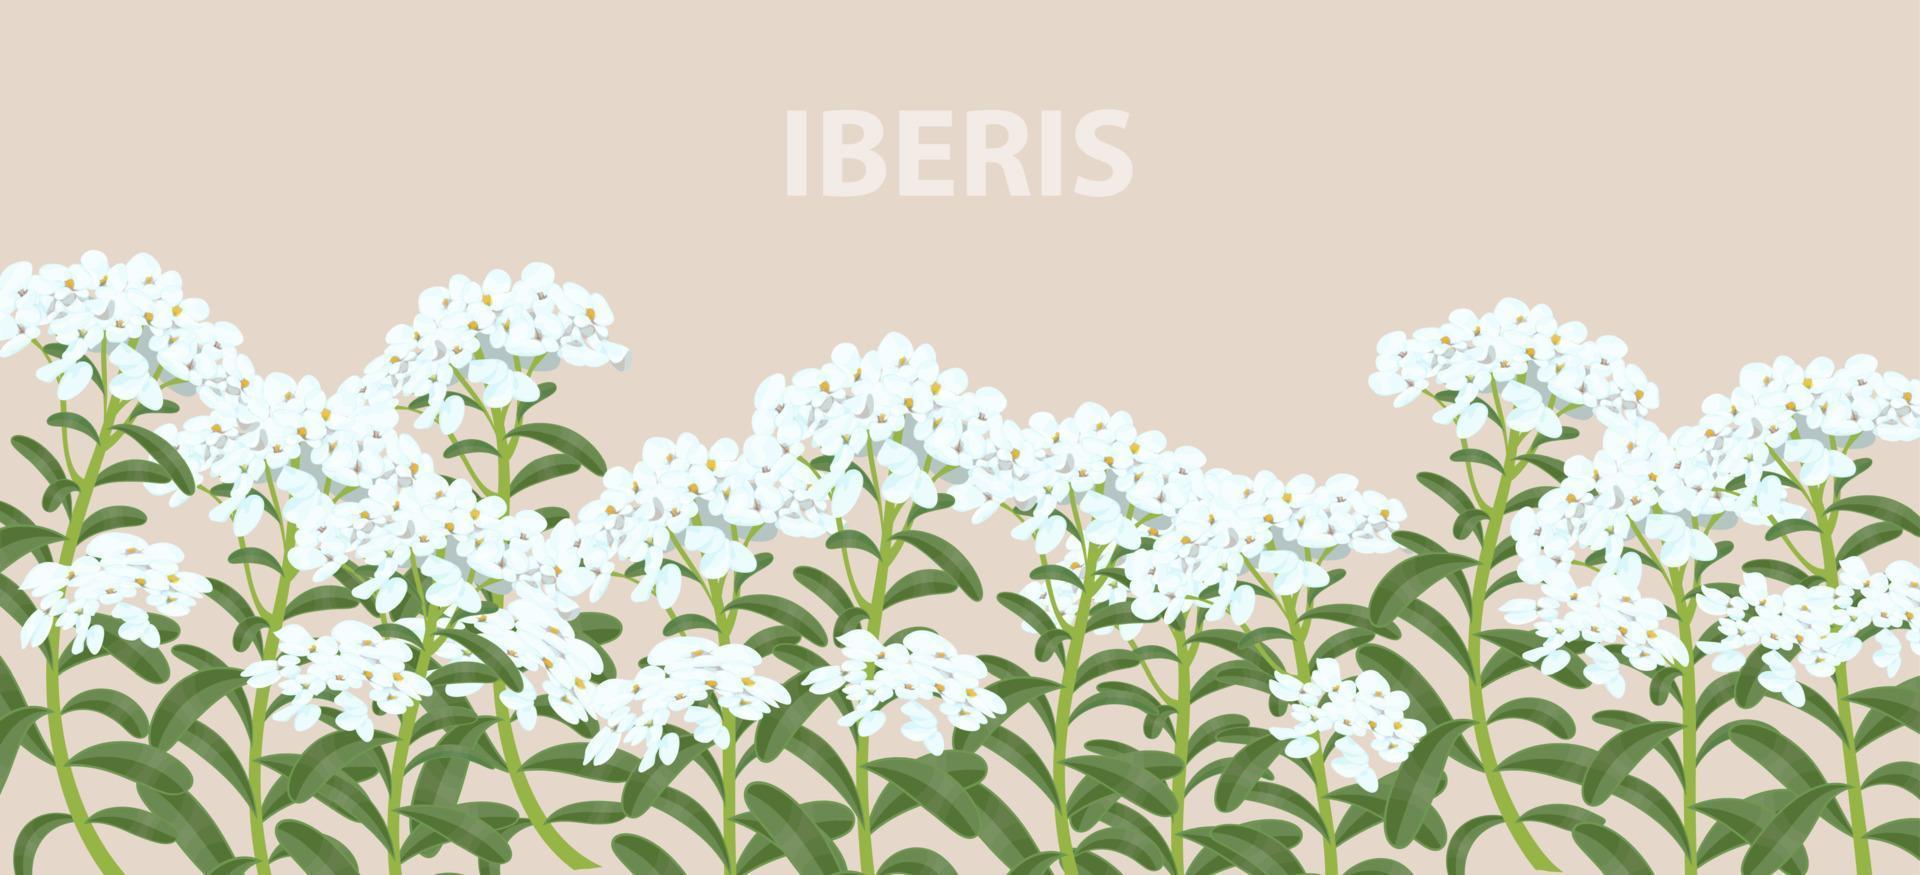 iberis Blumen auf einem horizontalen, realistischen Banner für Druck und Design. Vektor-Illustration. vektor